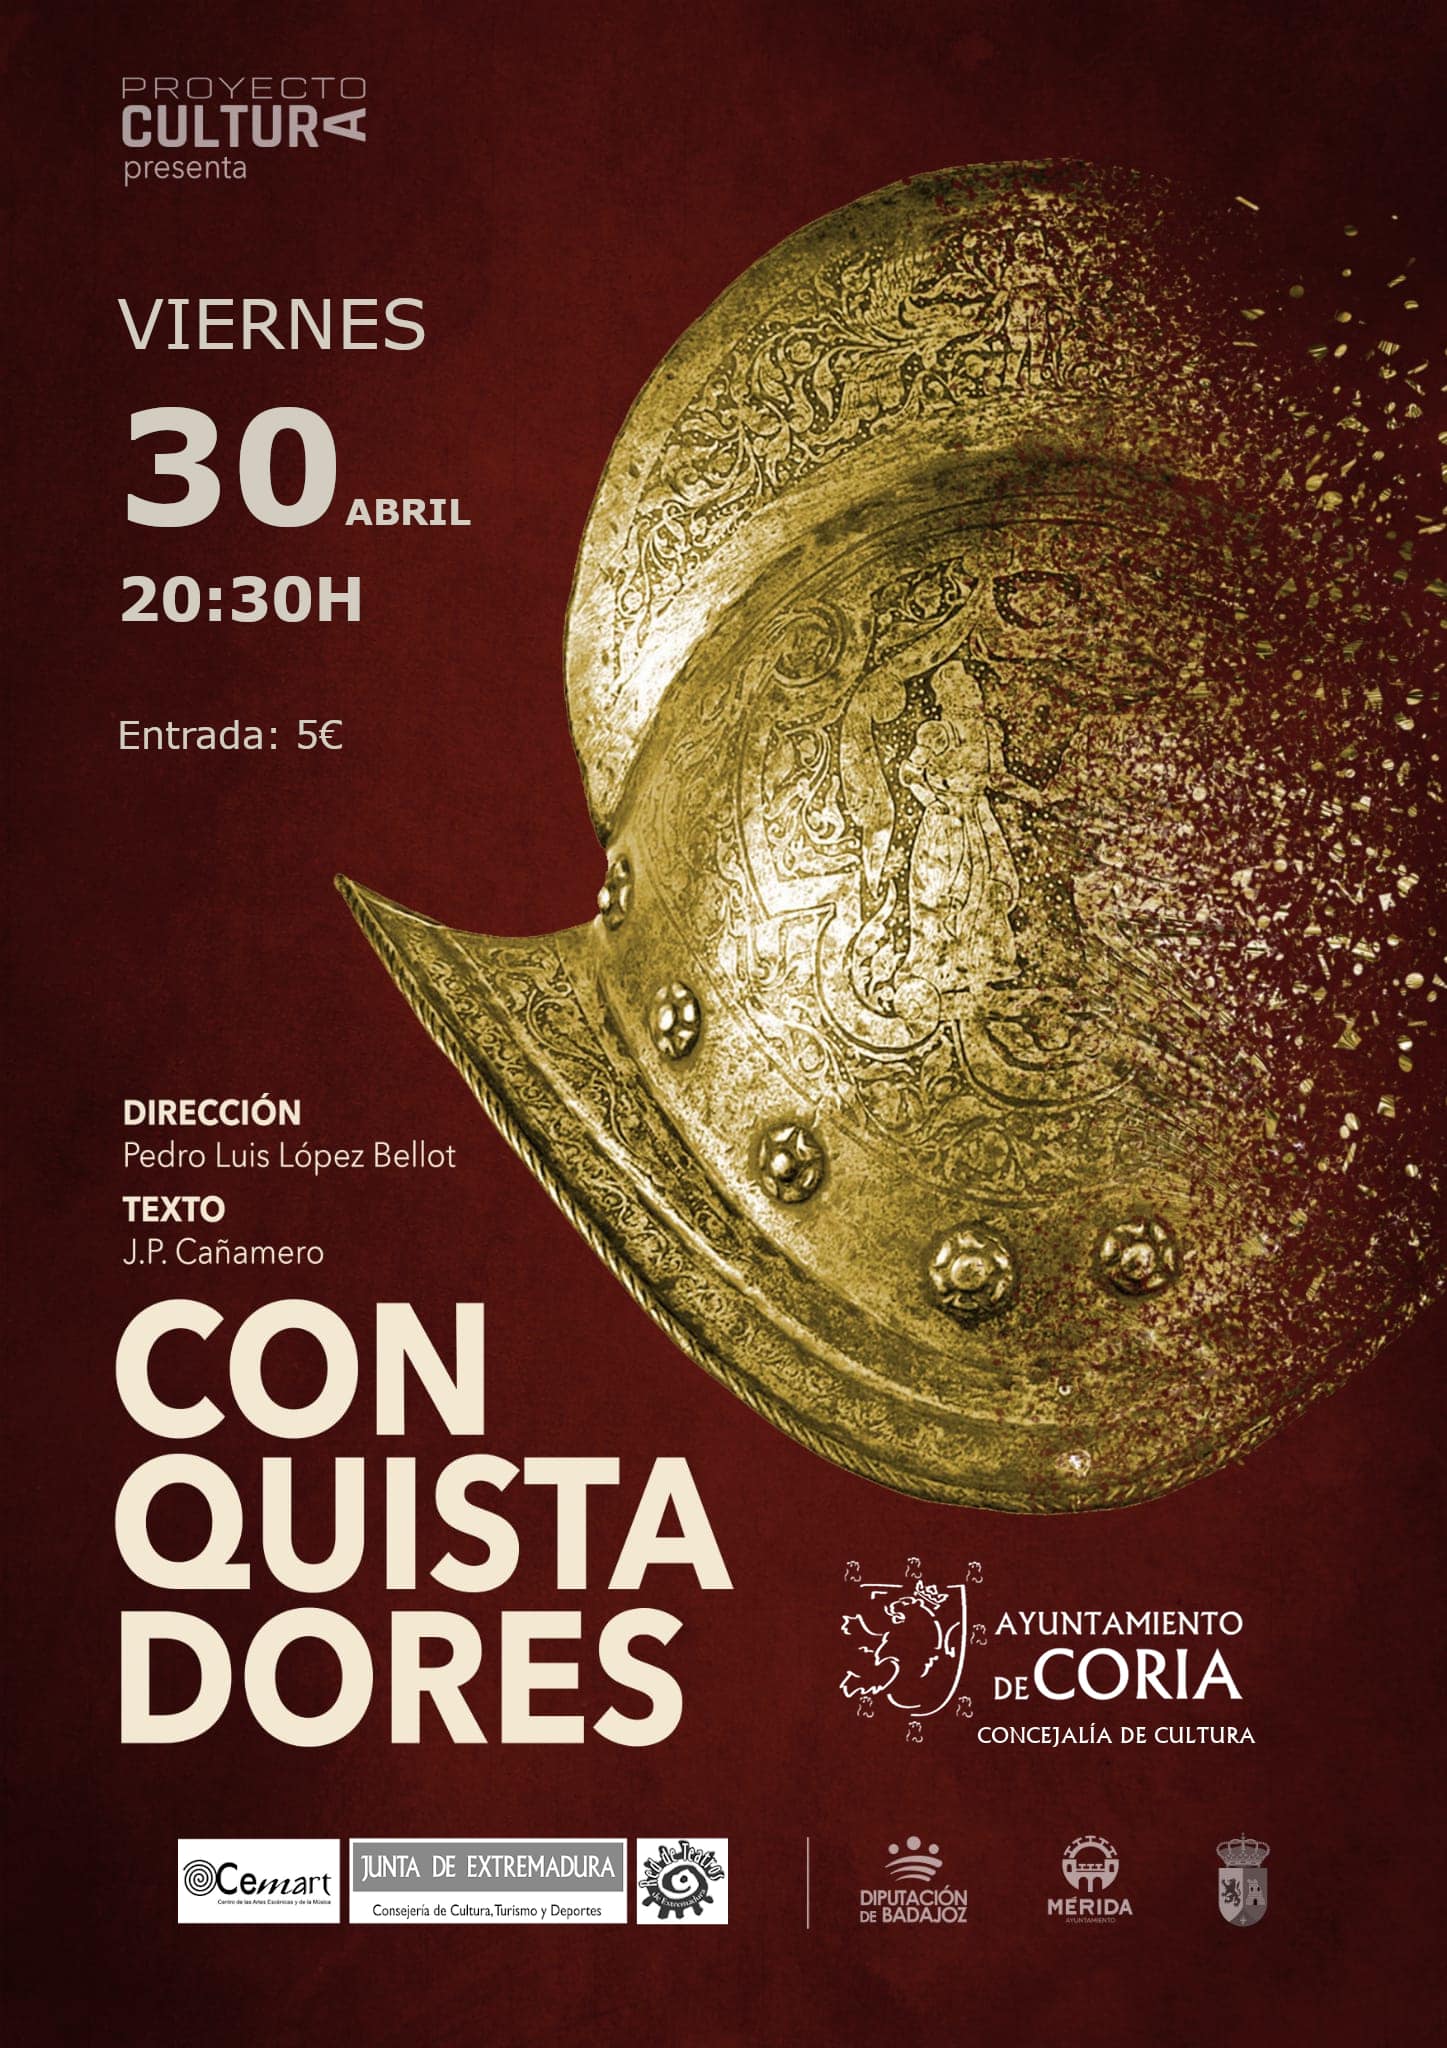 Conquistadores (2021) - Coria (Cáceres)